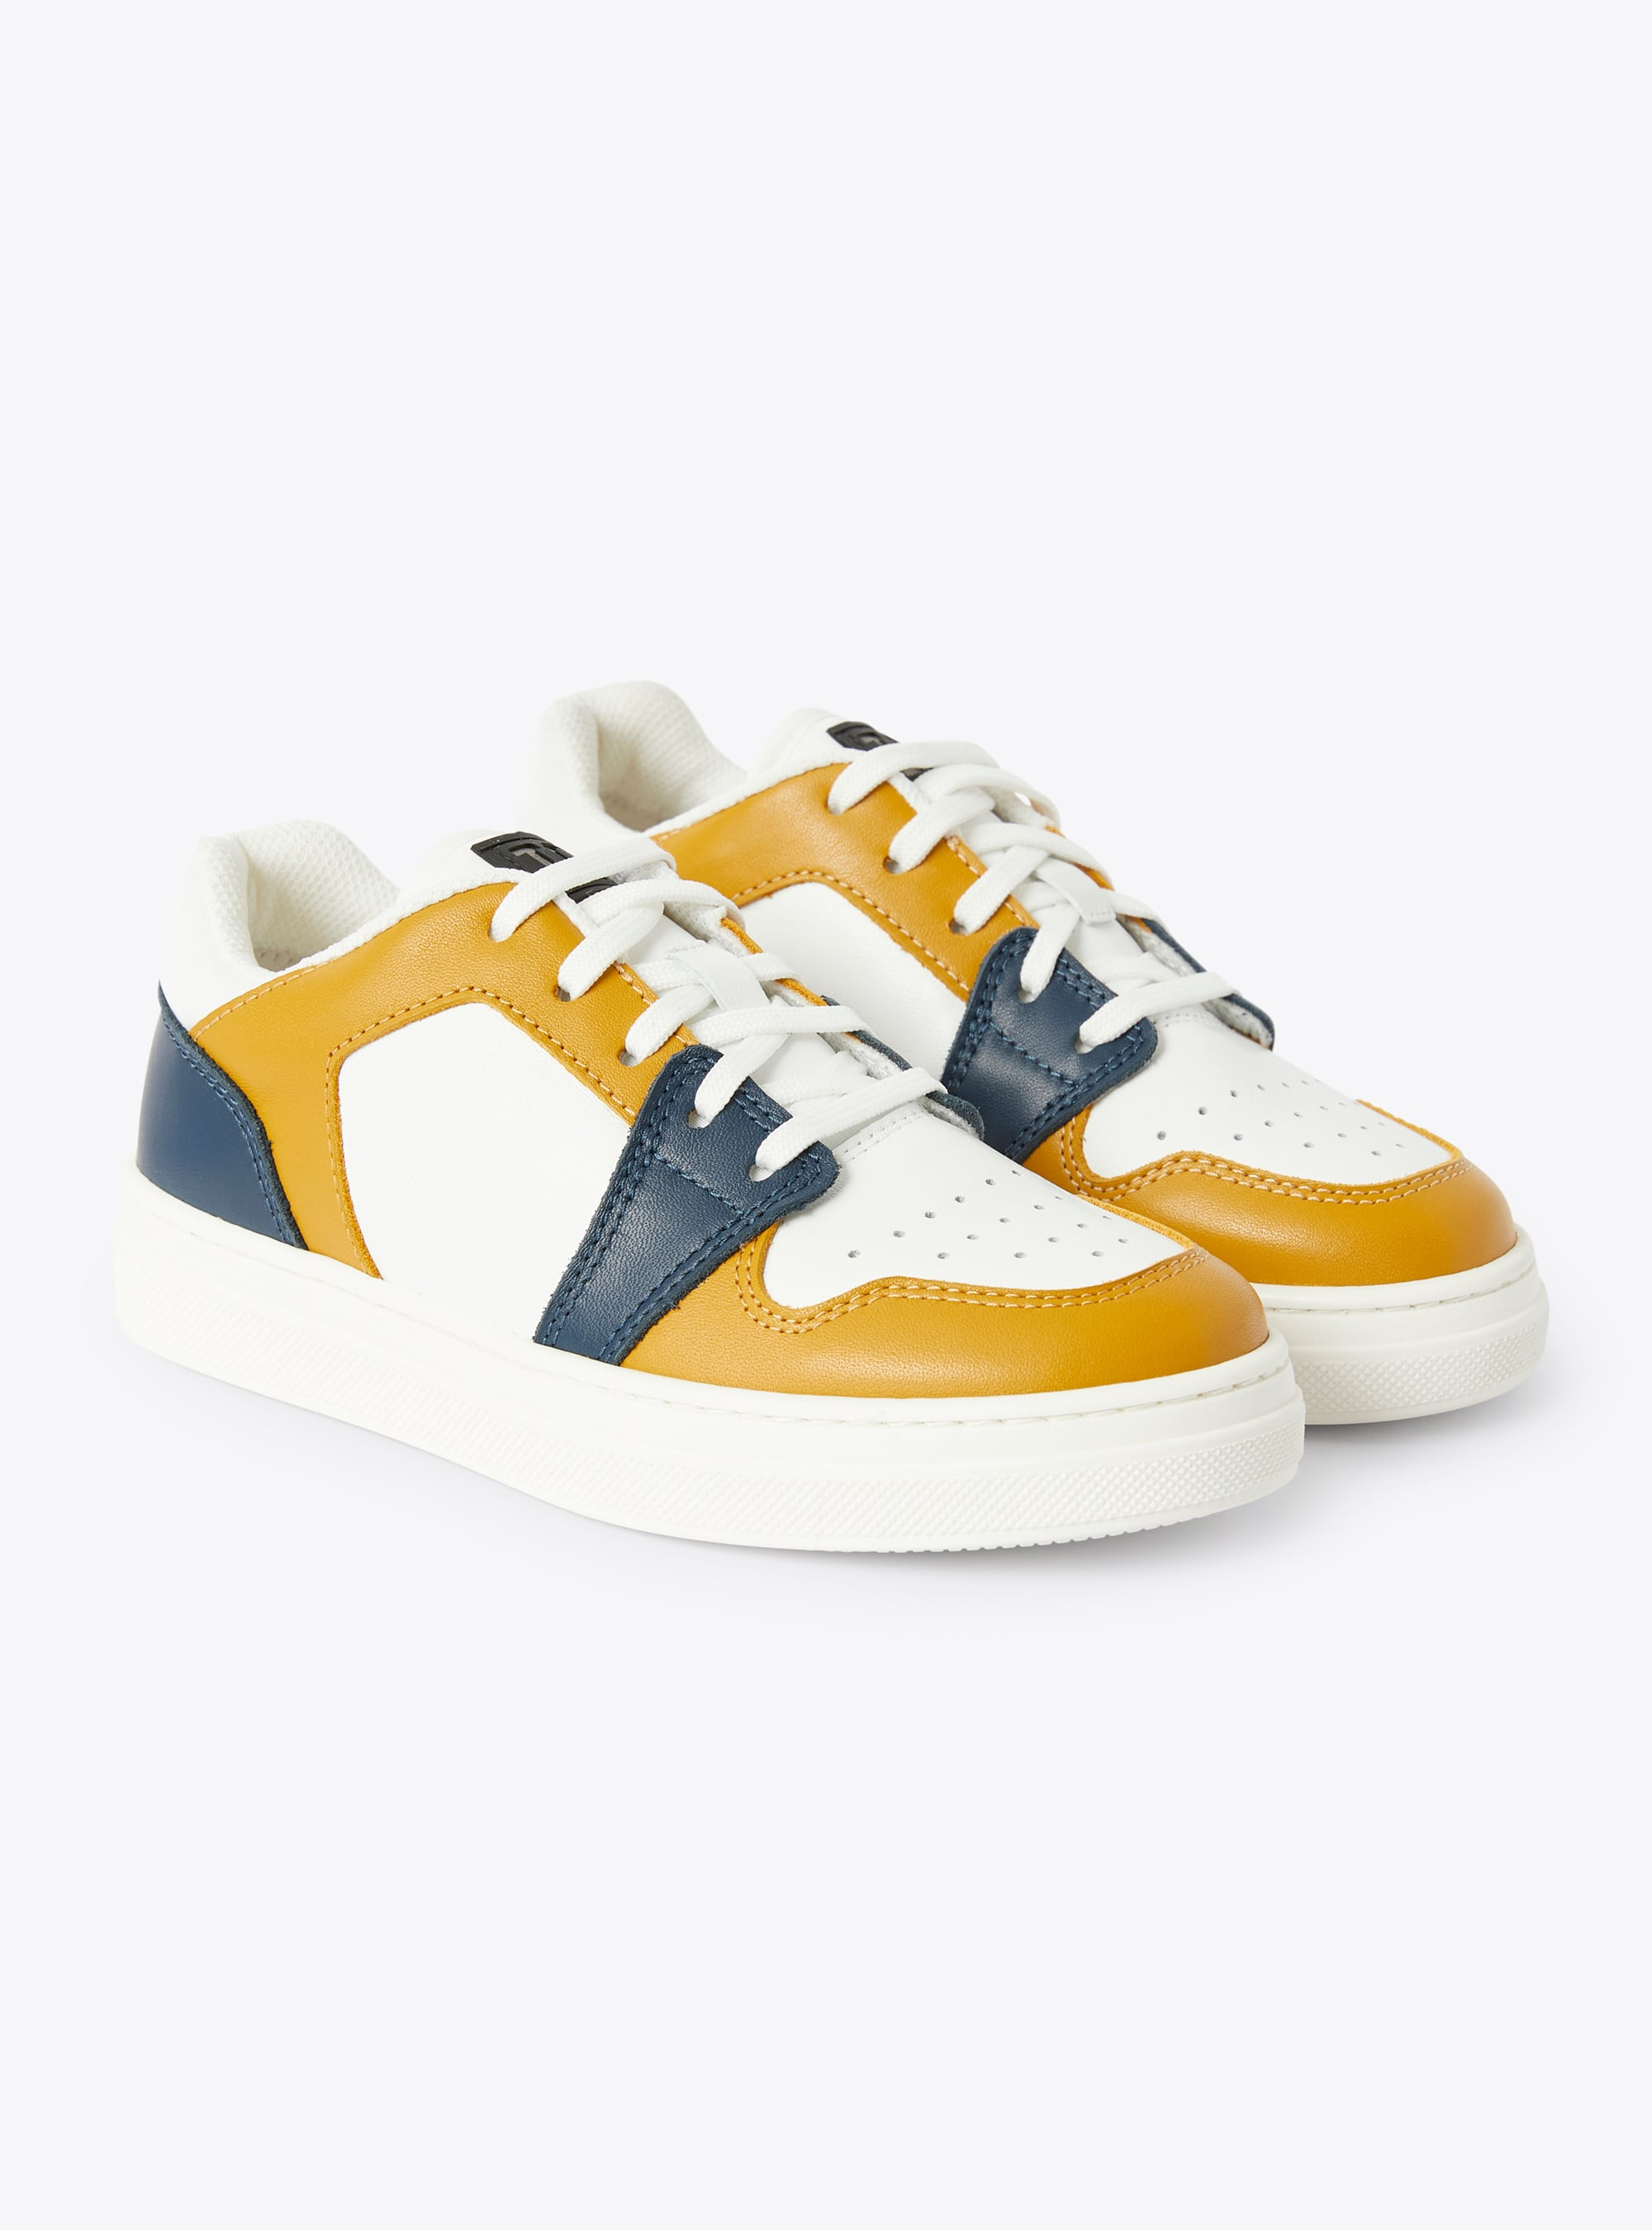 Sneaker IG low top bicolore cannella e blu - Arancione | Il Gufo